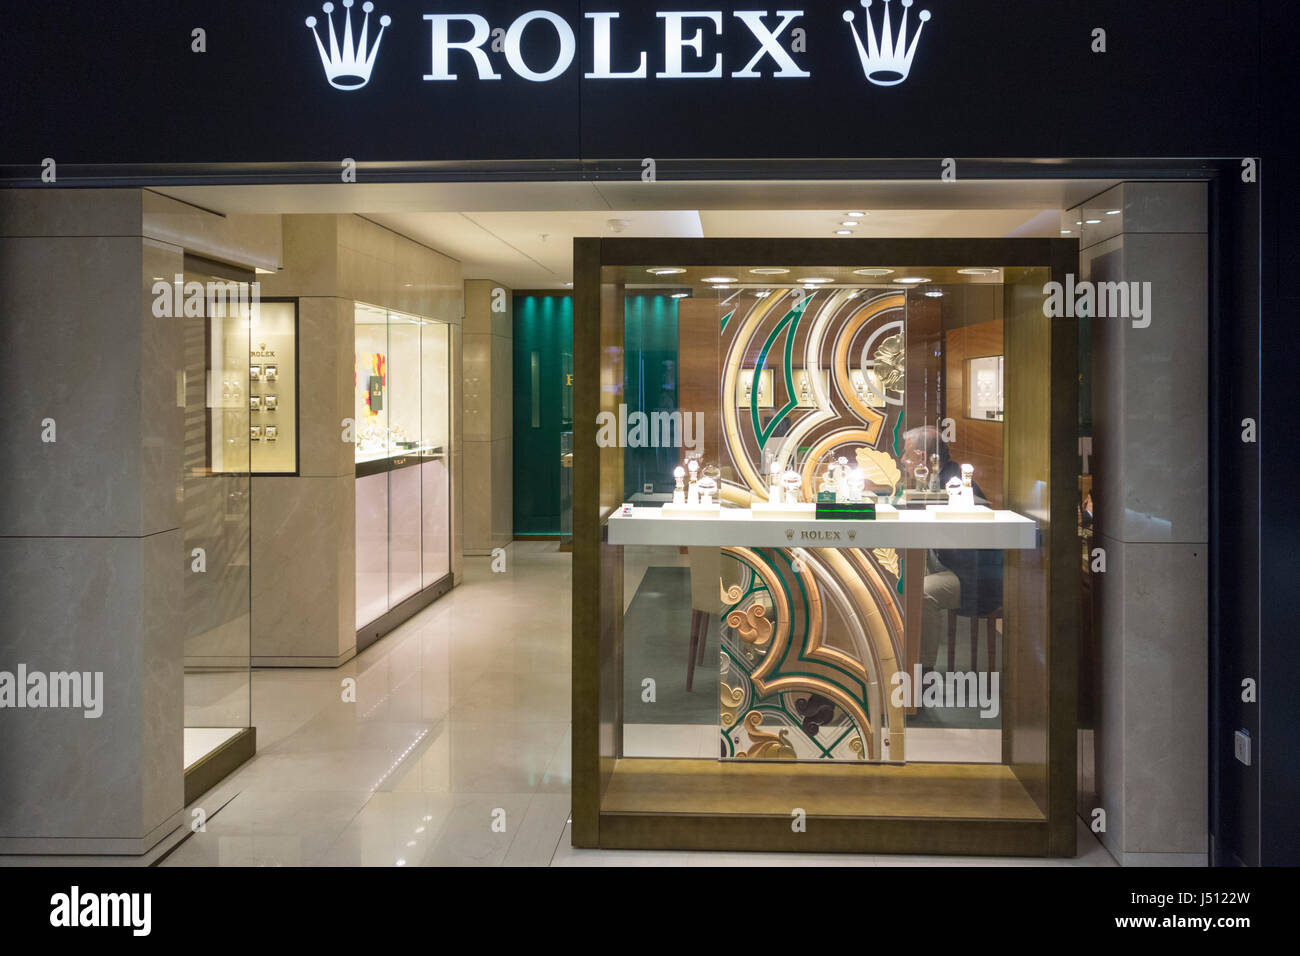 Rolex Duty-free Shop, internationalen Flughafen Genf, Schweiz  Stockfotografie - Alamy